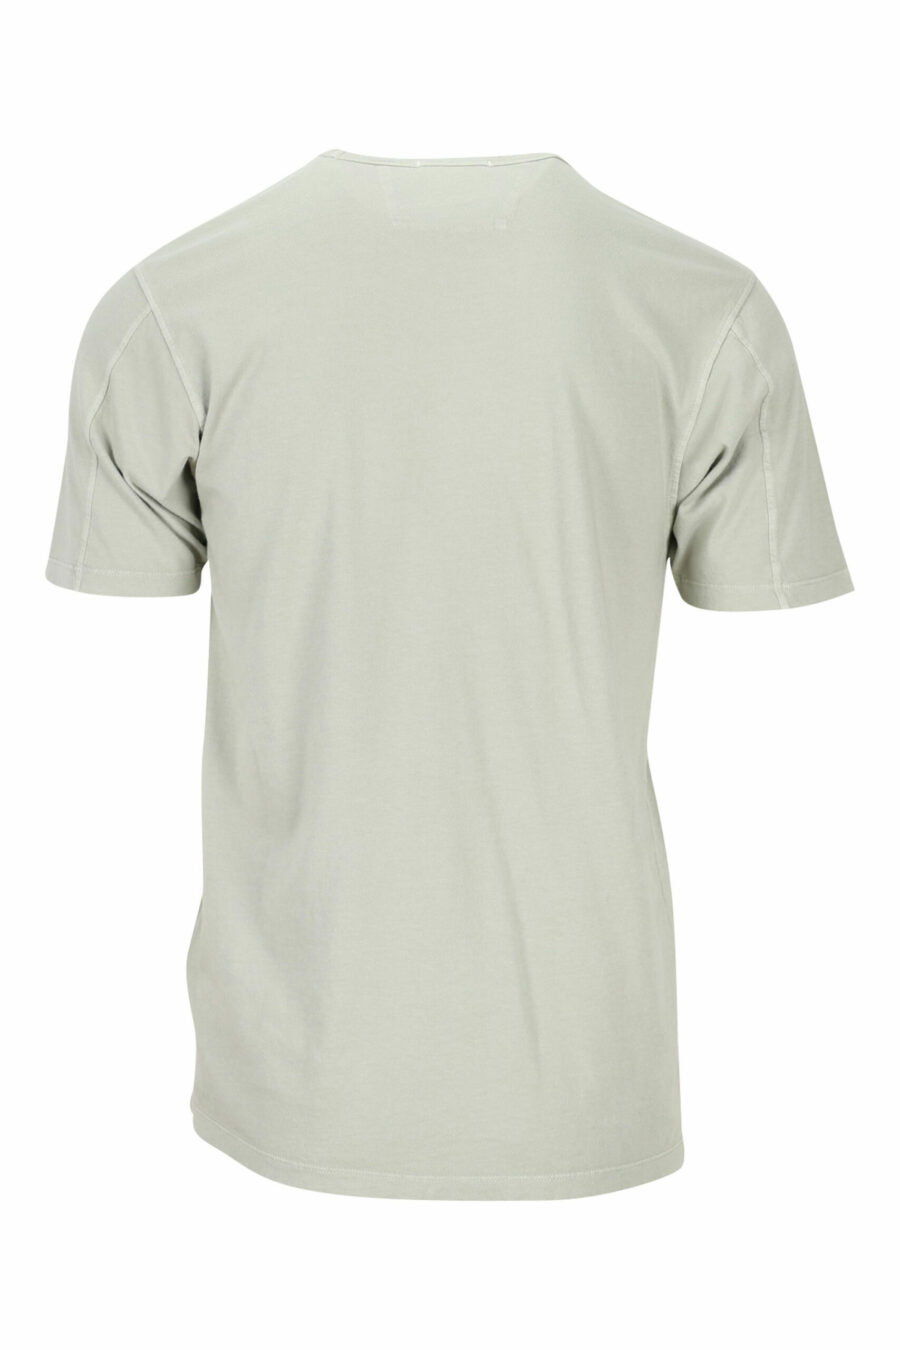 Beigefarbenes T-Shirt mit zentriertem Mini-Logo - 7620943594454 1 skaliert